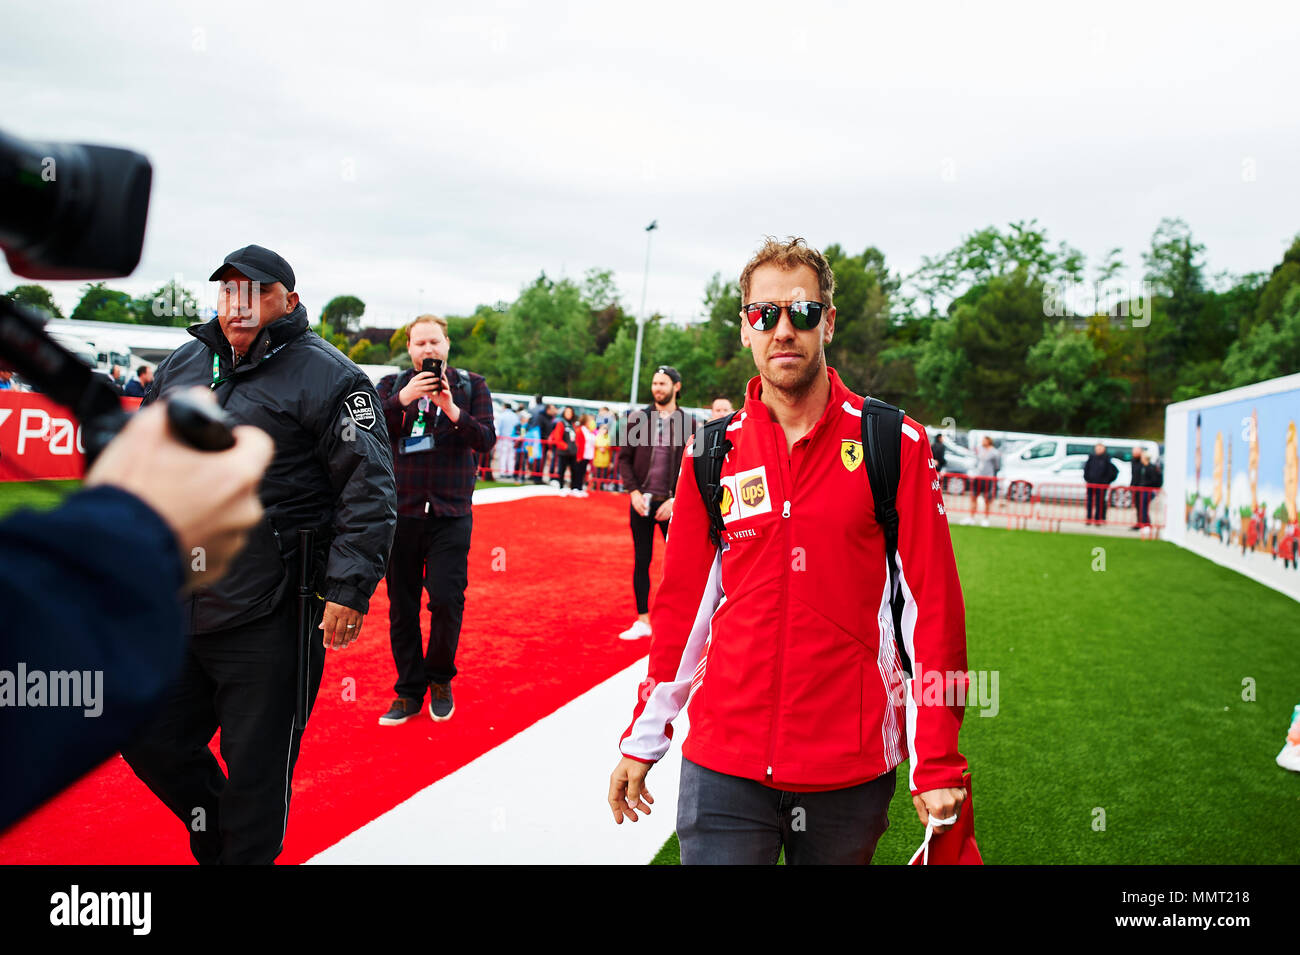 Barcellona, Spagna. Il 13 maggio 2018. Sebastian Vettel del team Ferrari arriva al circuito durante la gara di Formula Uno al giorno. Credito: Pablo Guillen Alamy News Credito: Pablo Guillen/Alamy Live News Foto Stock